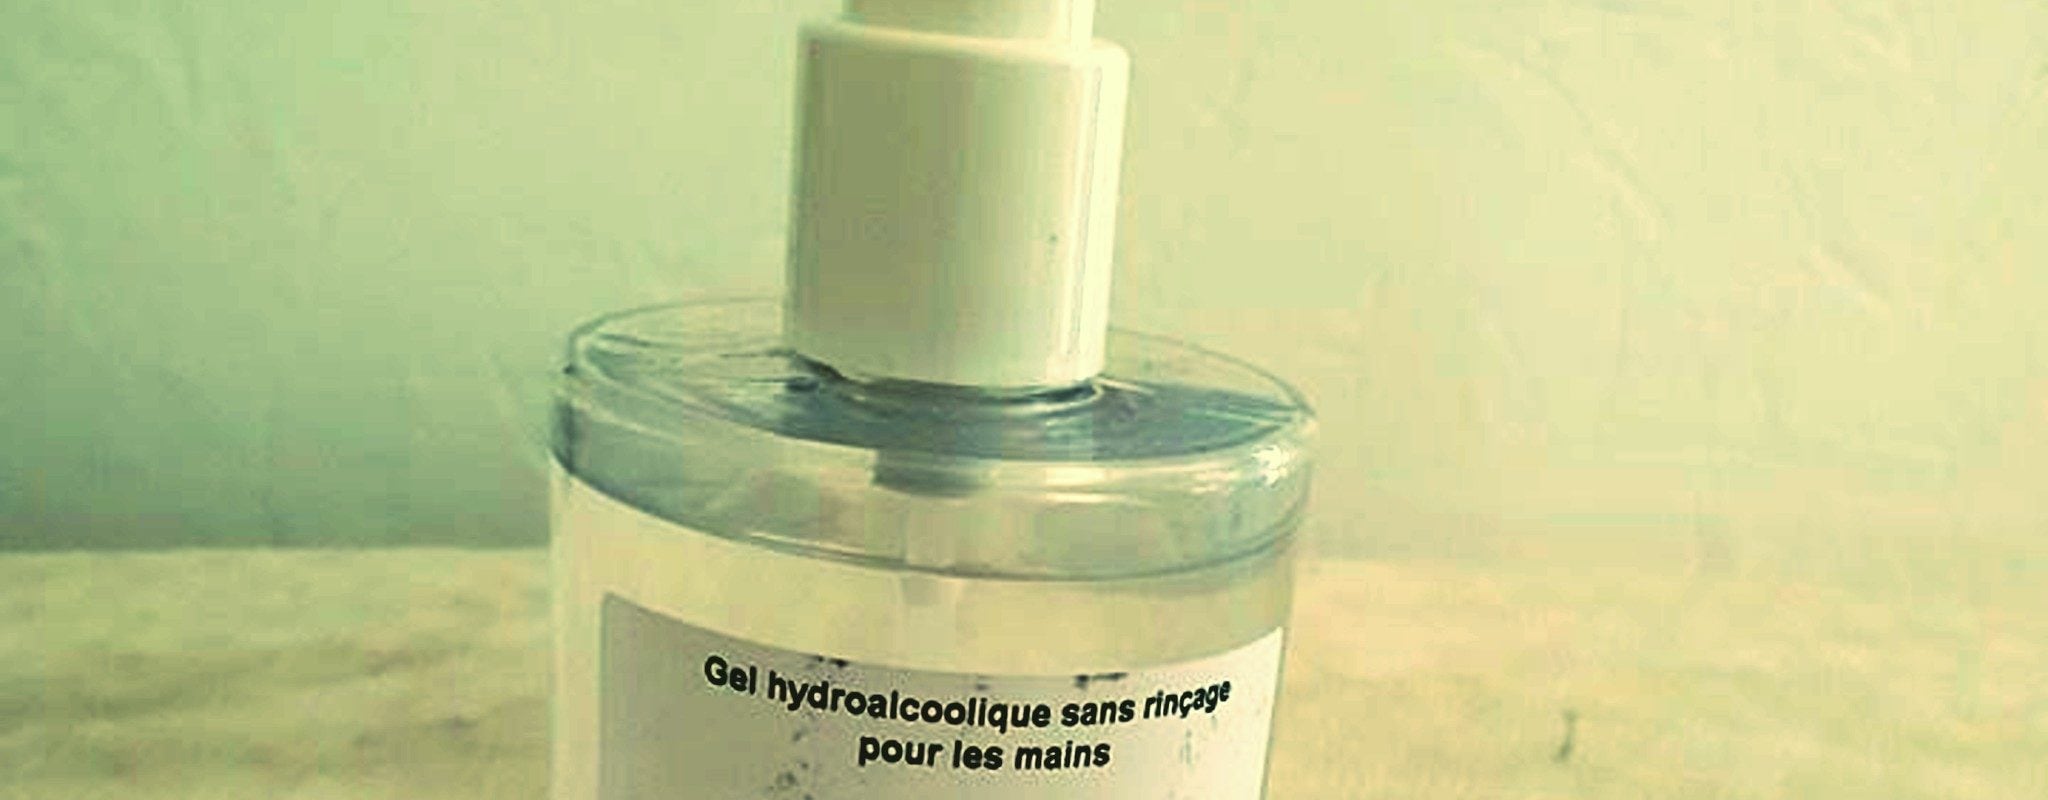 Du gel hydroalcoolique LVMH gratuit, vendu dans un Carrefour de Strasbourg